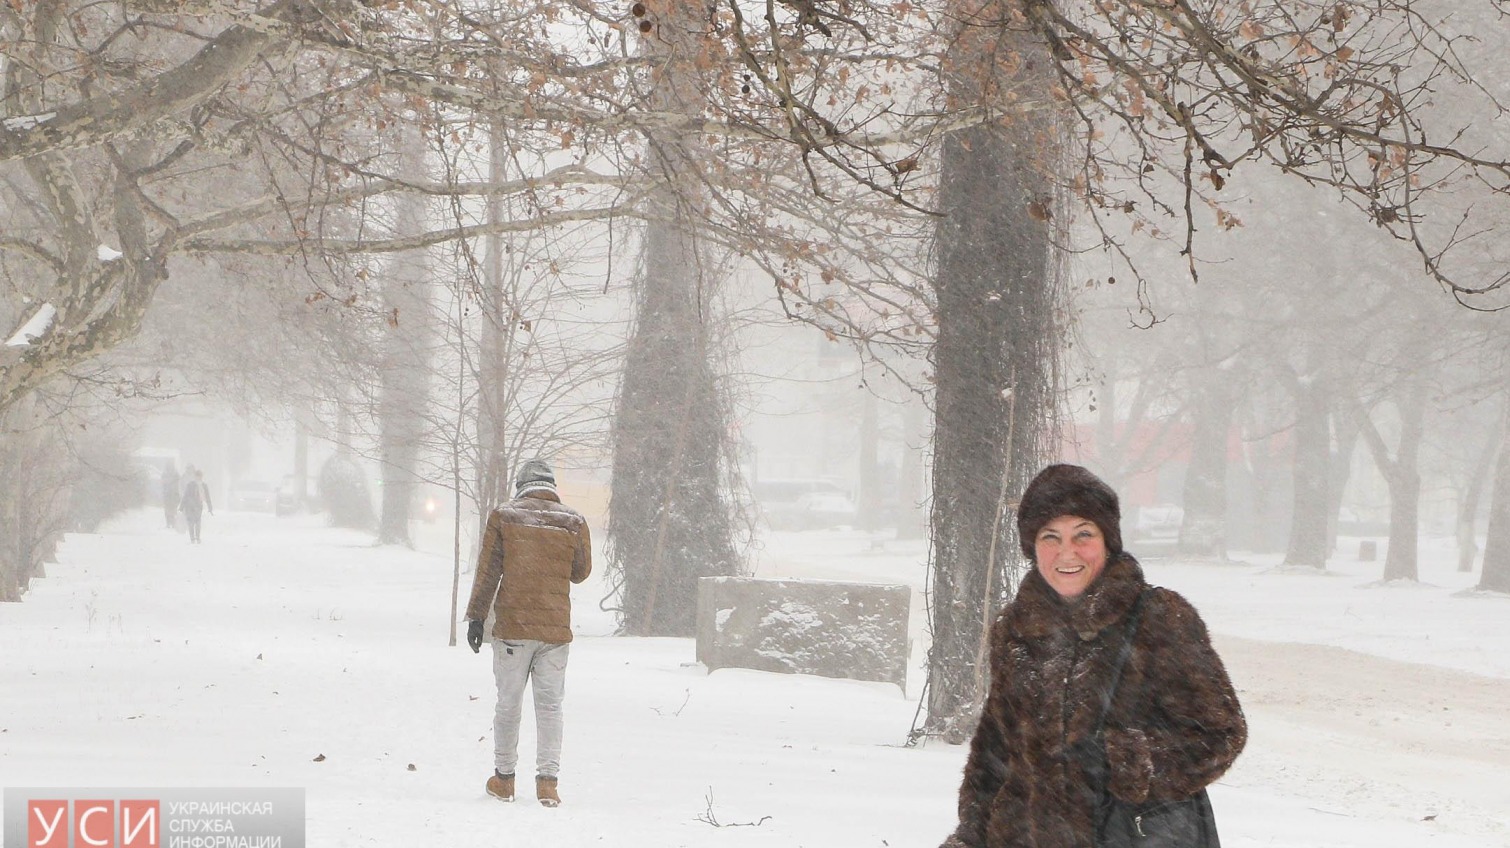 Снег в радость: одесситы во время непогоды улыбаются, гуляют в парках, играют в снежки, едят на улице и даже ходят по канату (фото) «фото»